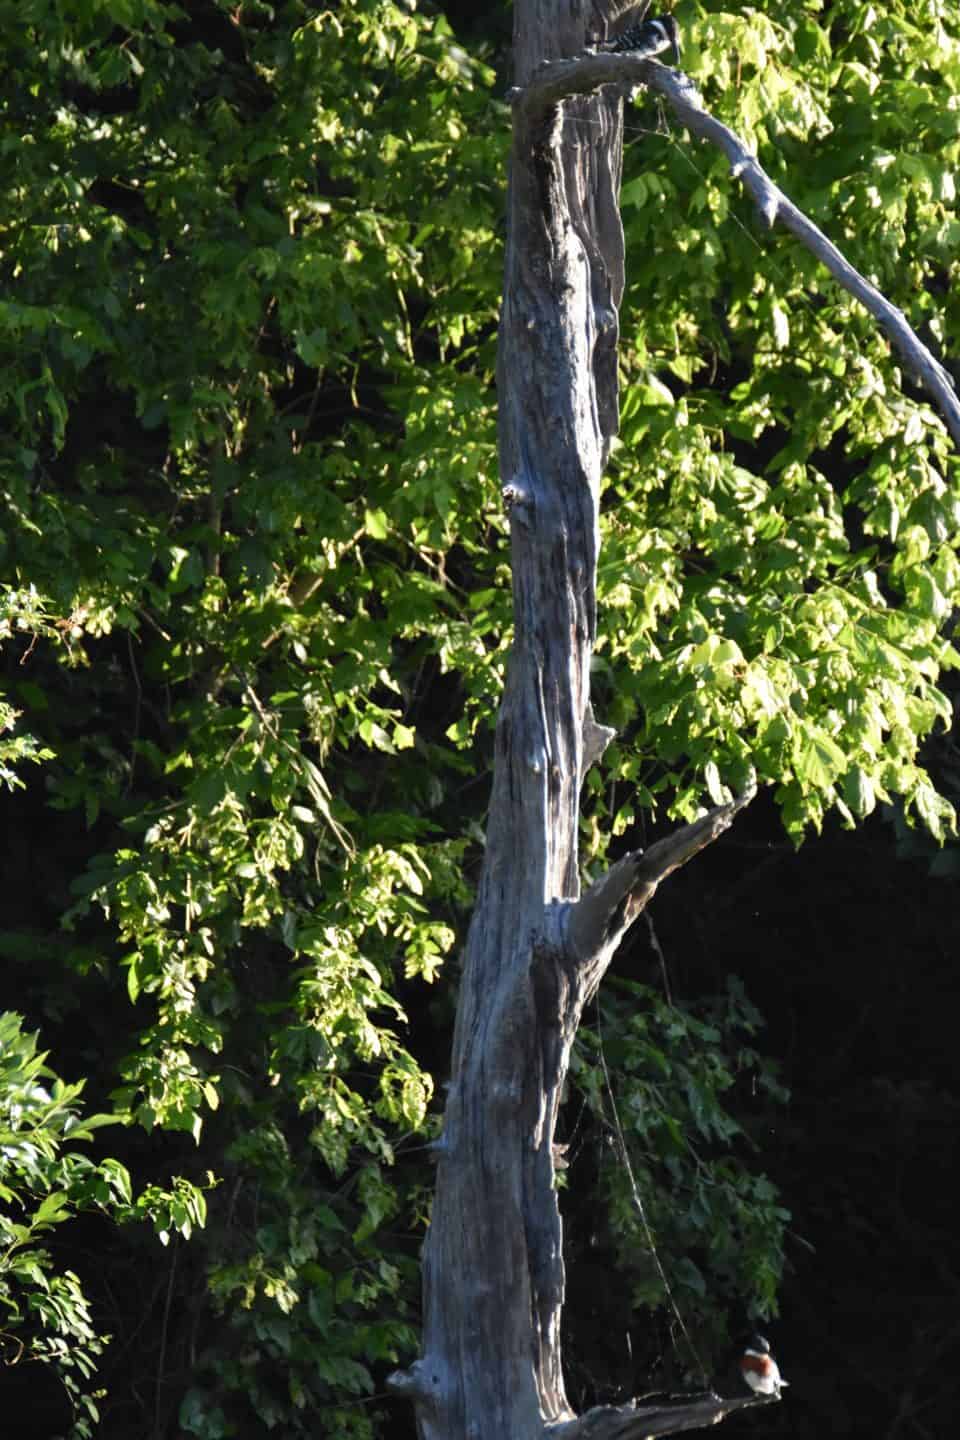 Green Kingfishers Bastrop, Texas